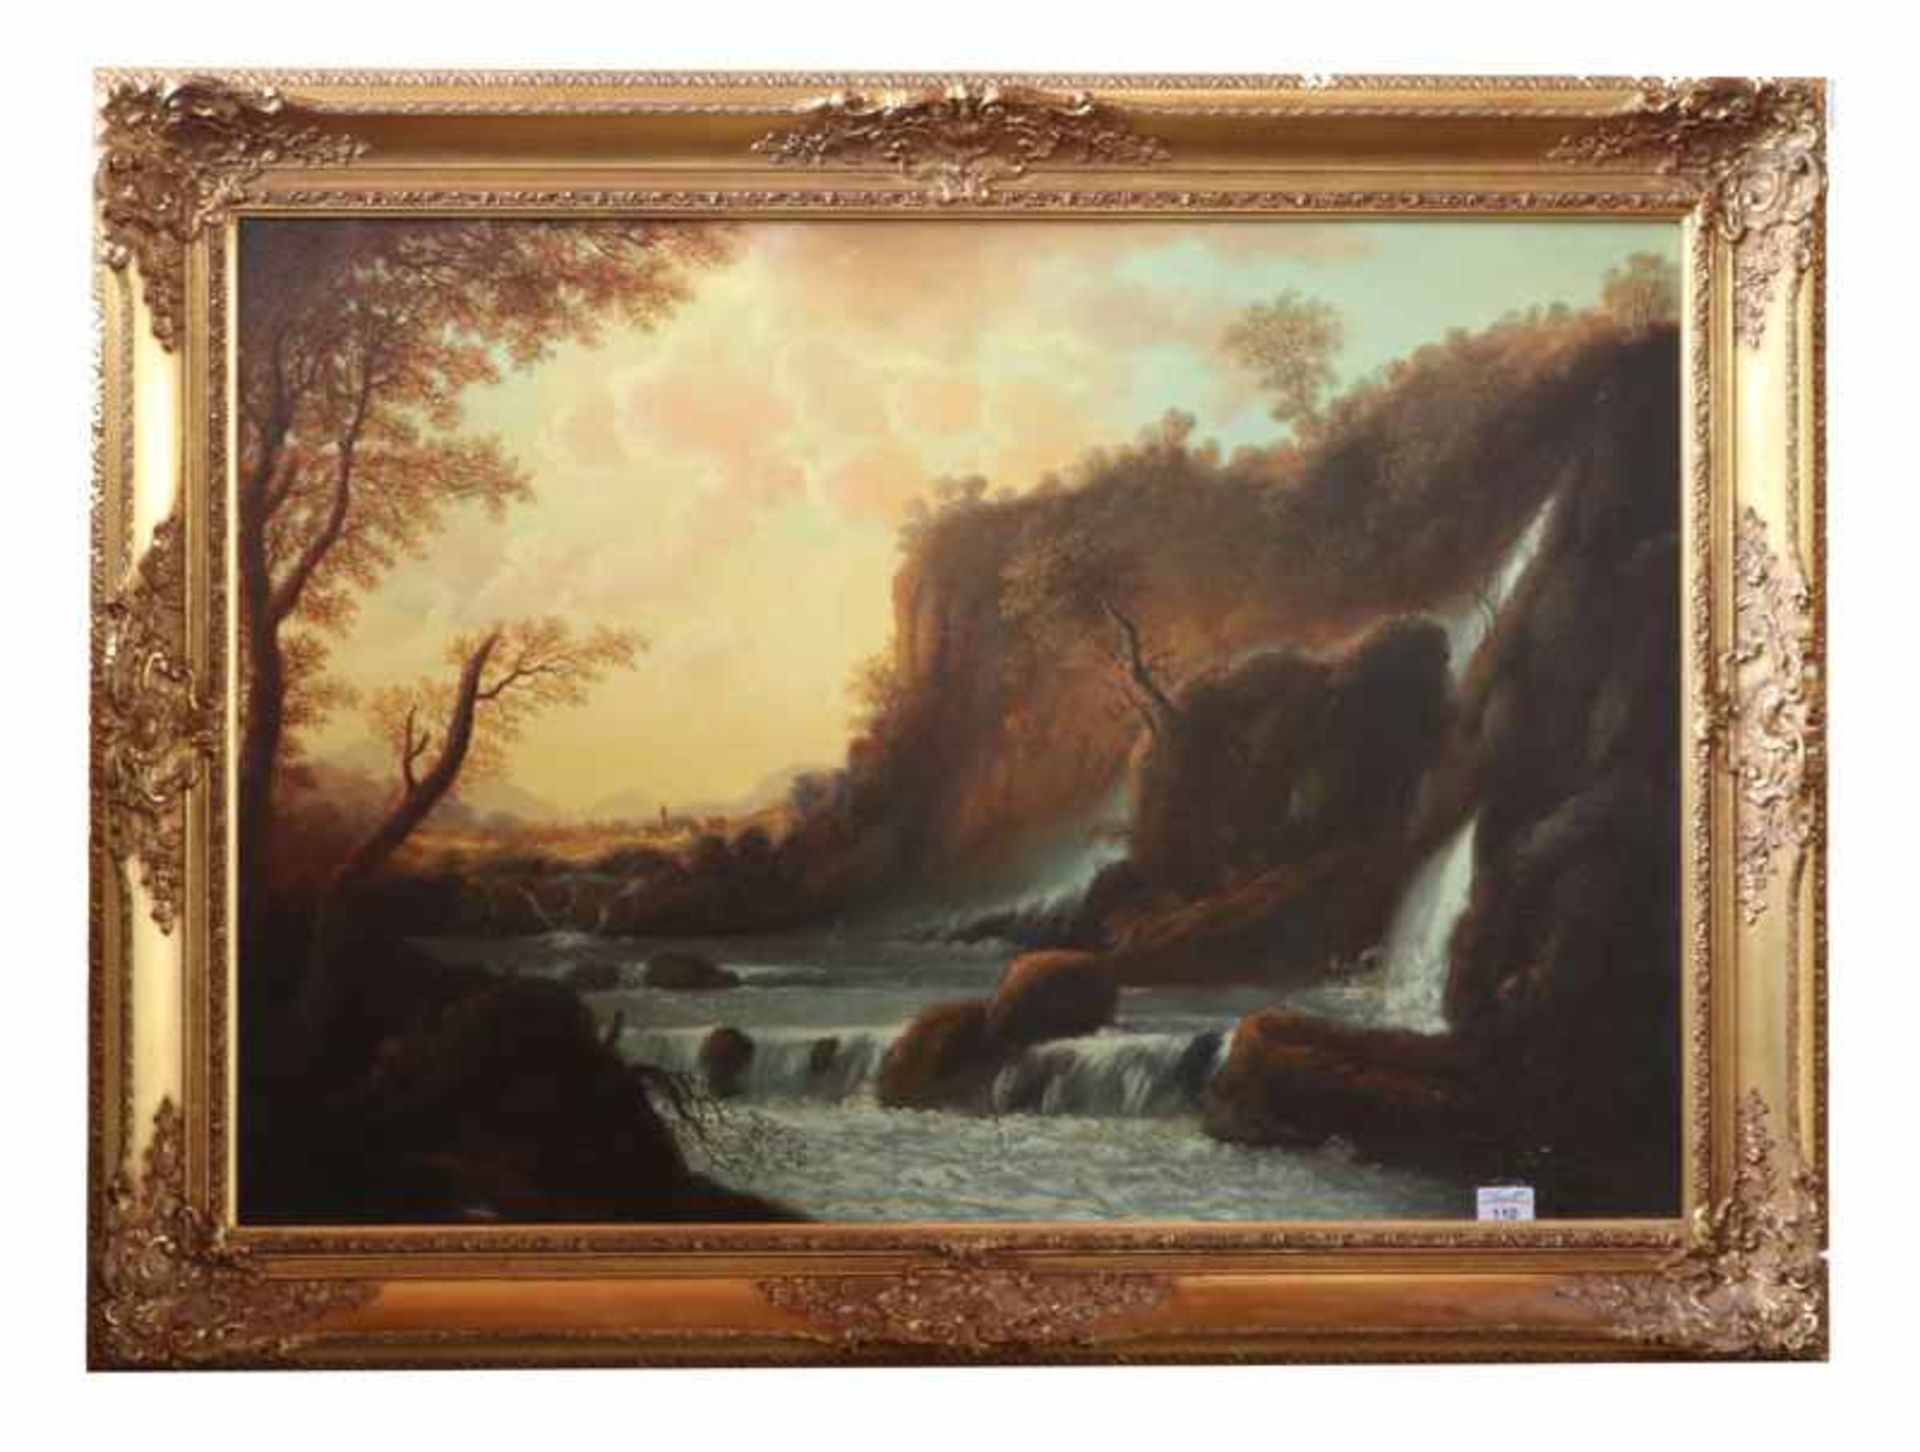 Gemälde ÖL/LW 'Romantische Landschafts-Szenerie mit Wasserfall', signiert C. Riva, dekorativ